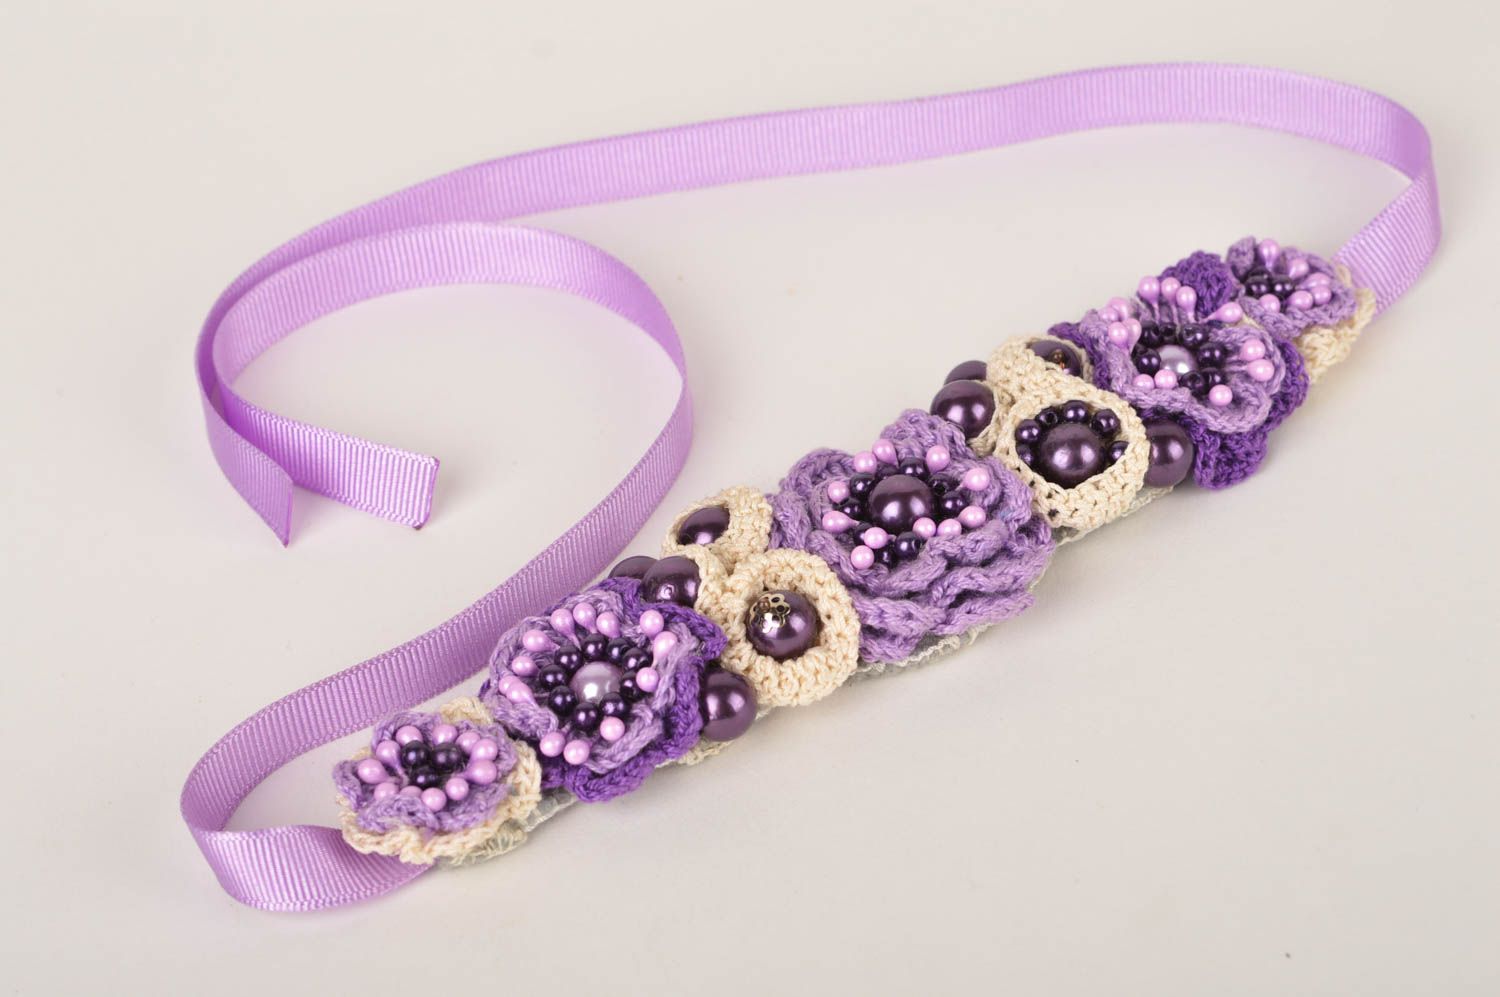 Unusual handmade wrist bracelet designs flower bracelet crochet ideas gift ideas photo 2